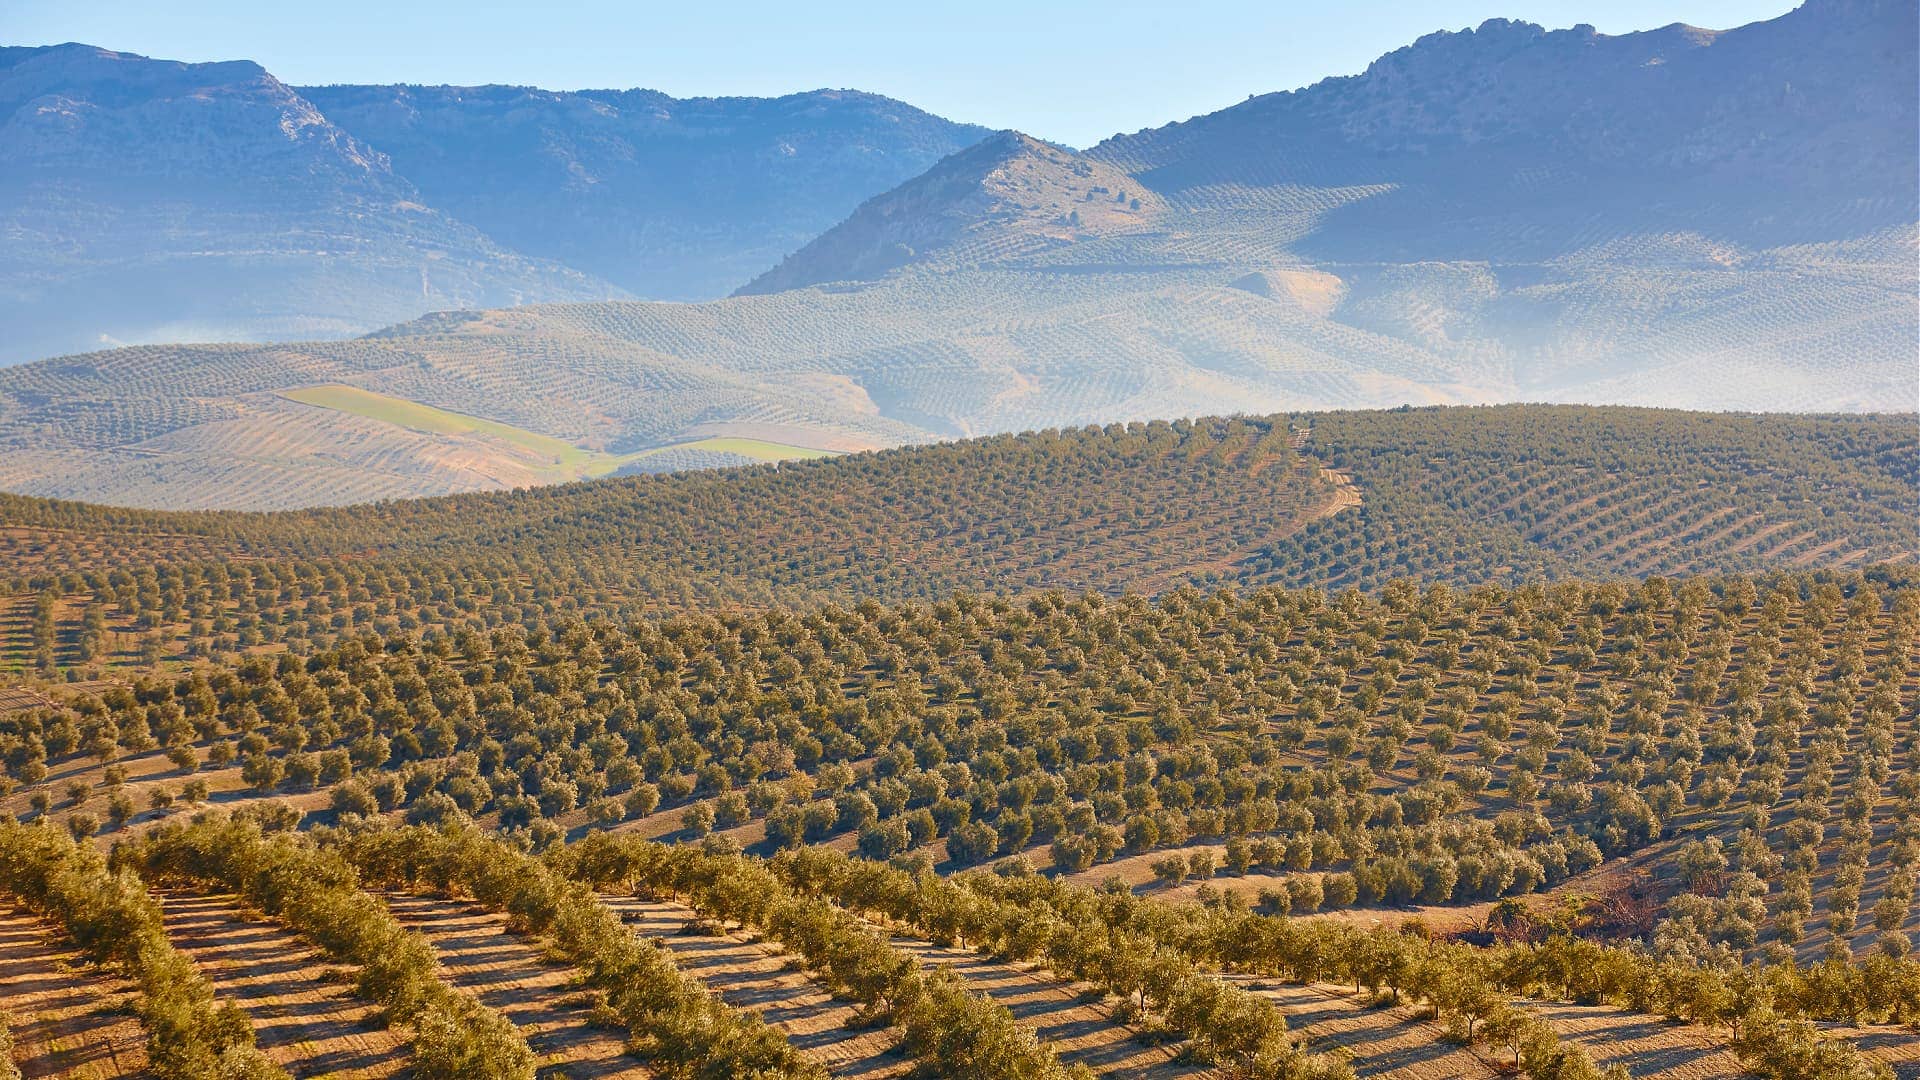 Европа-производство-бизнес-изменение климата-наносит ущерб-андалузскому-оливковому-маслу-производству-оливкового-масла-раз